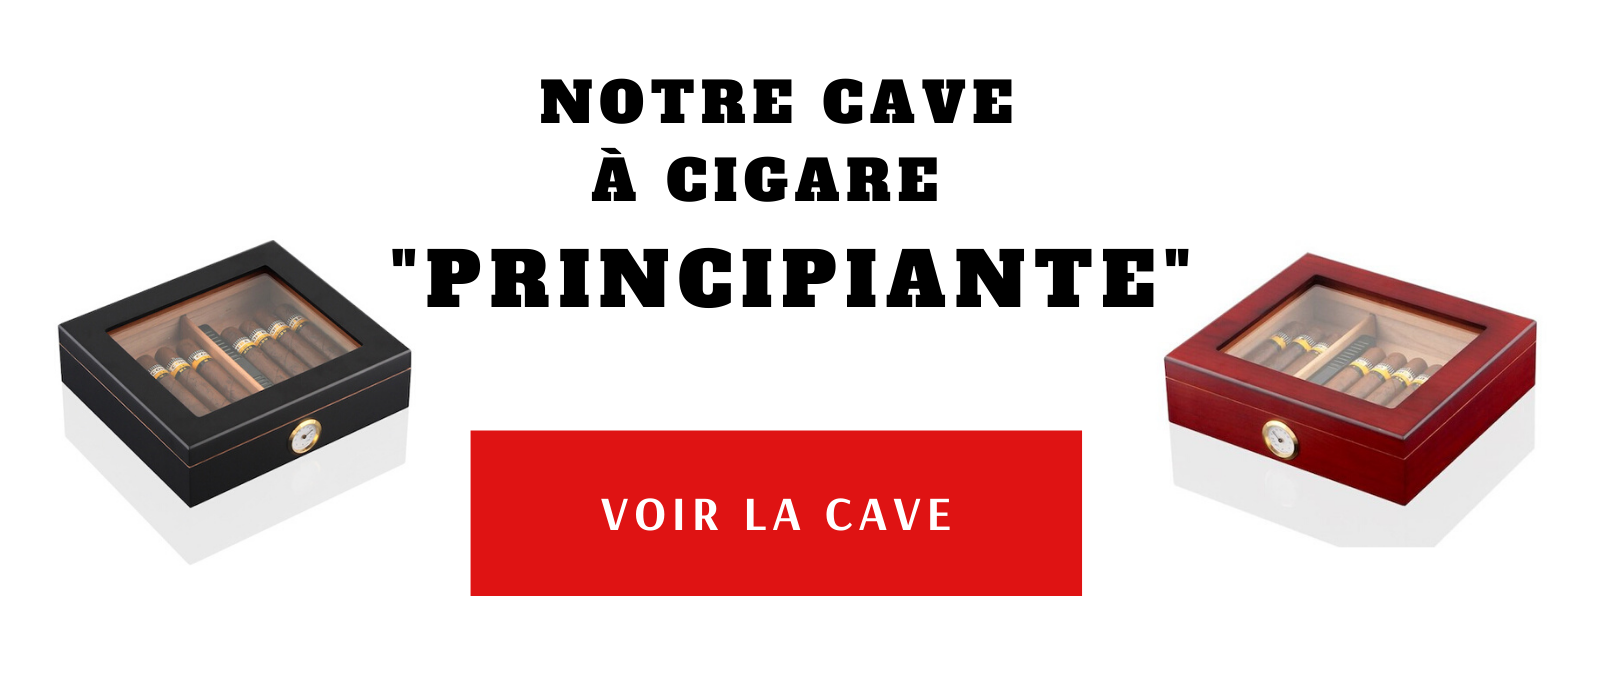 Cave a cigare